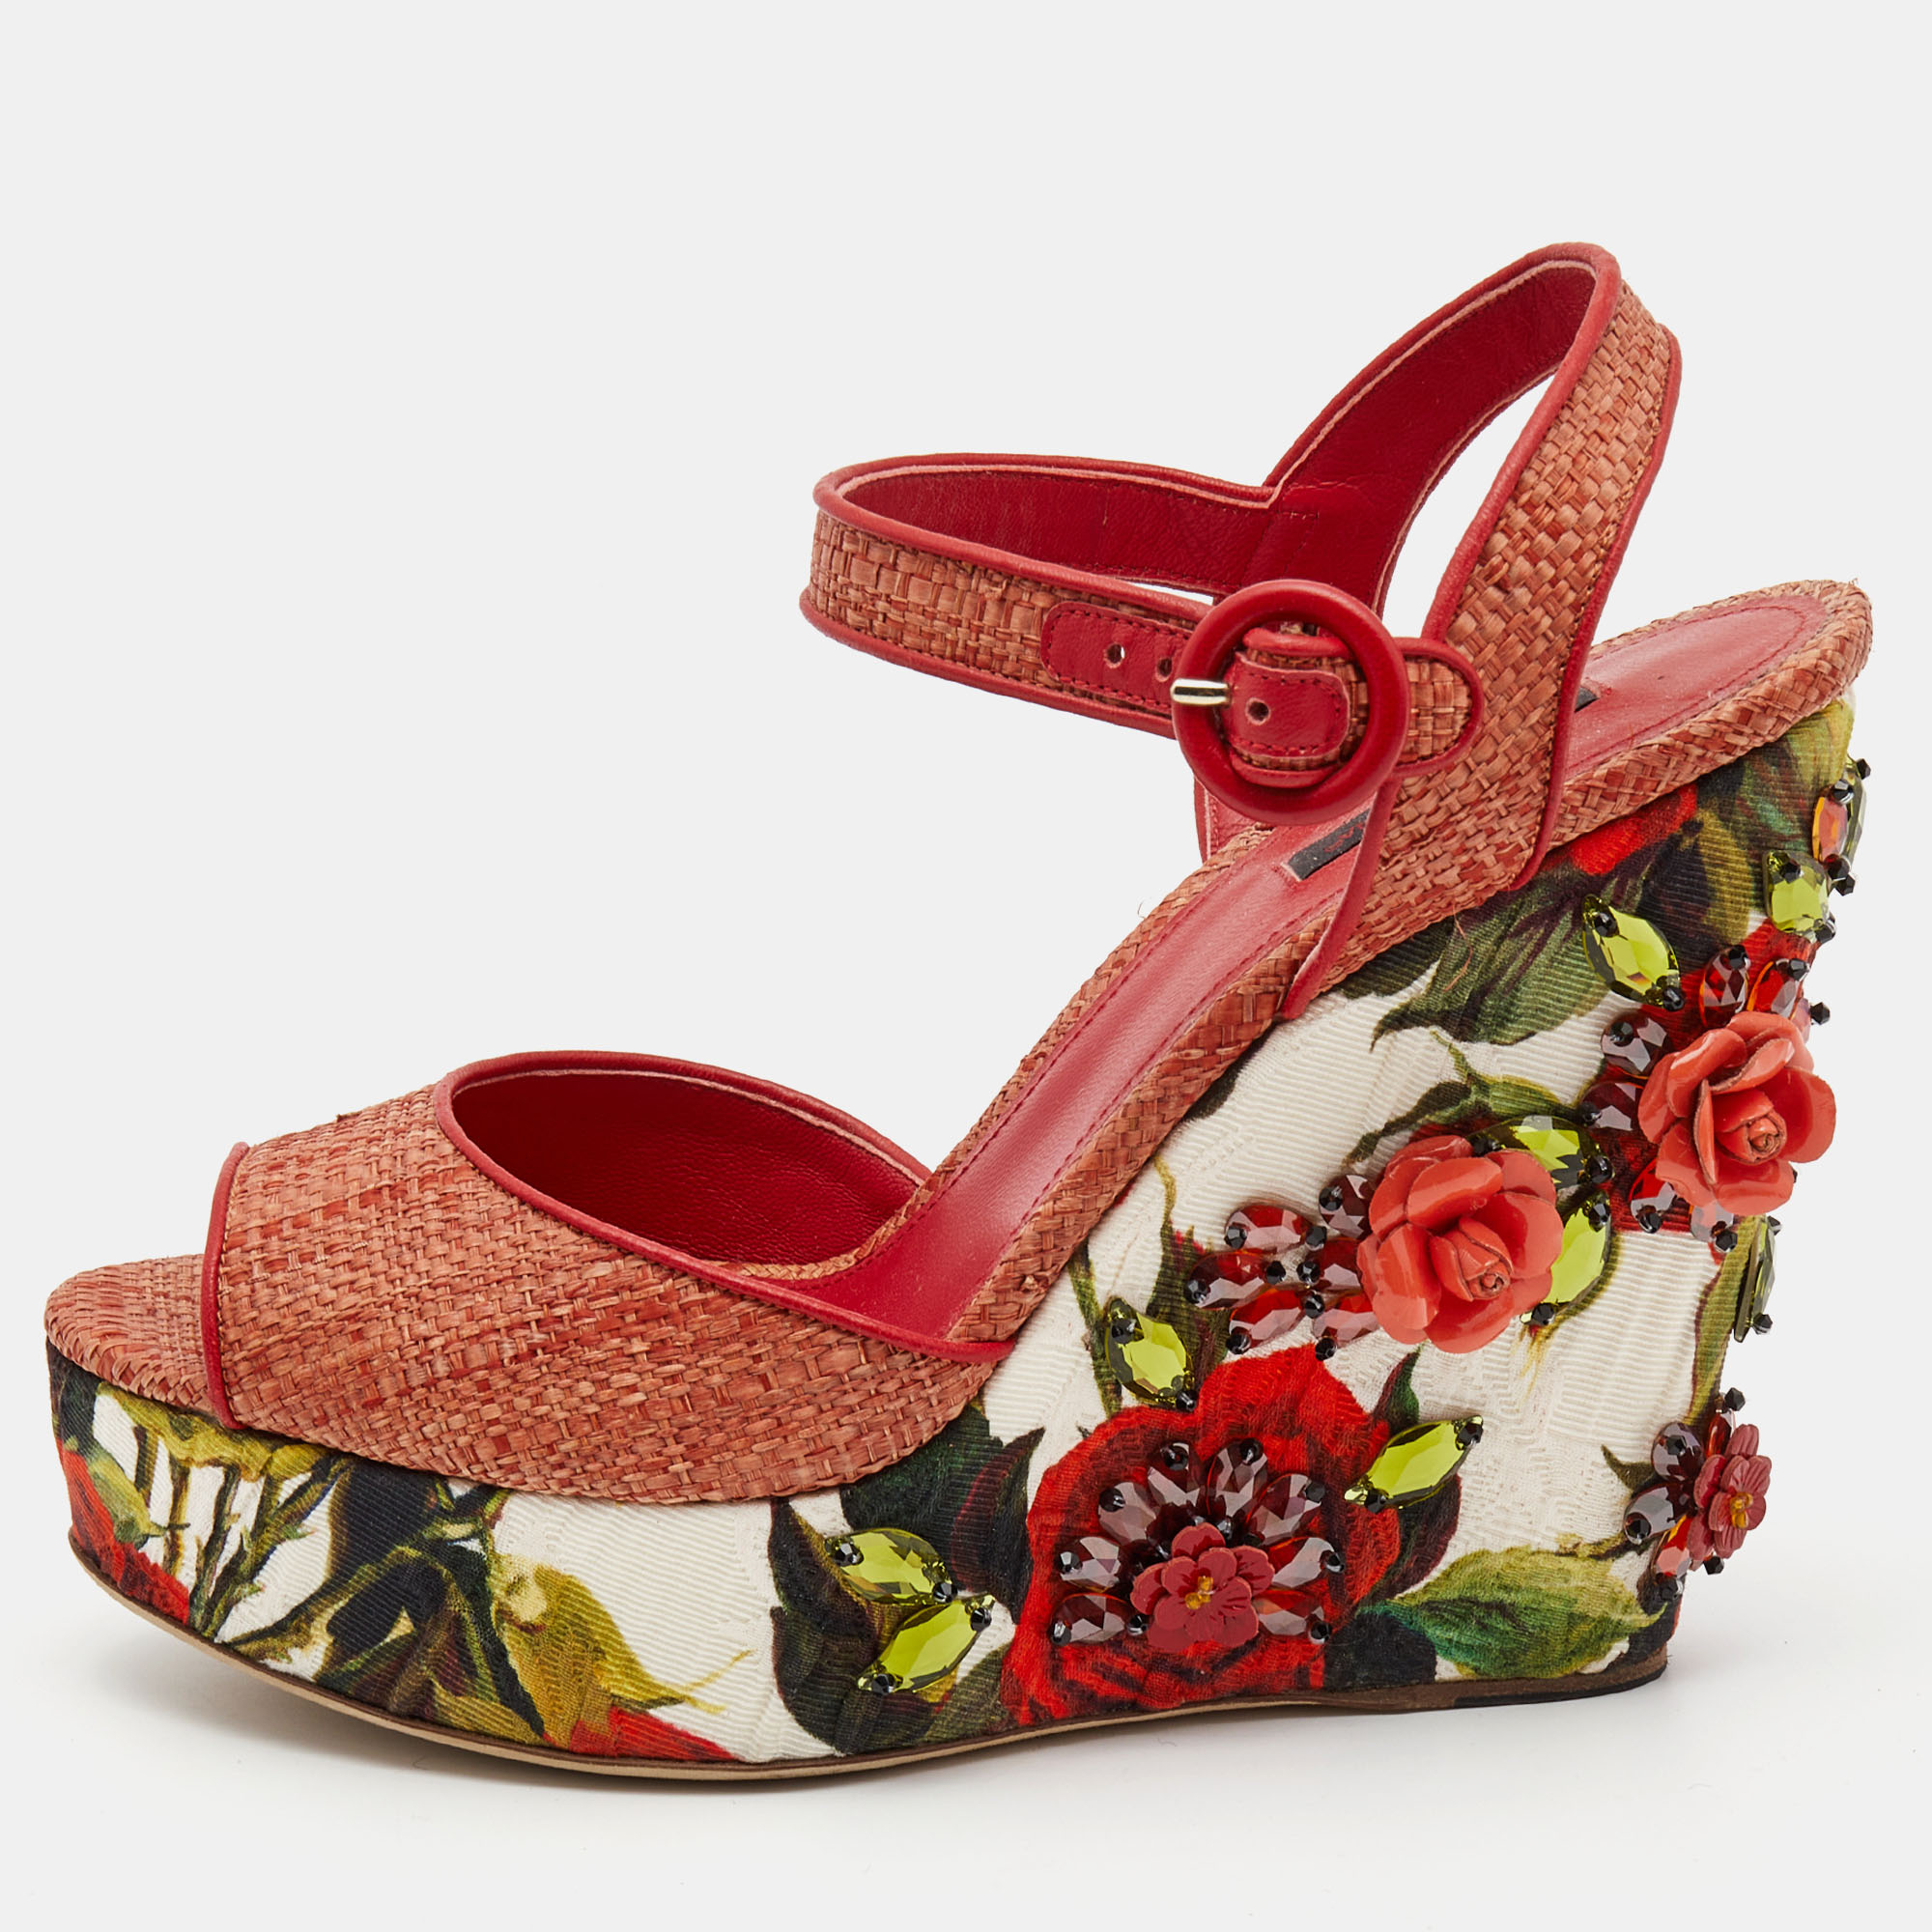 Dolce & gabbana pink floral raffia wedge platform ankle strap sandals size 40